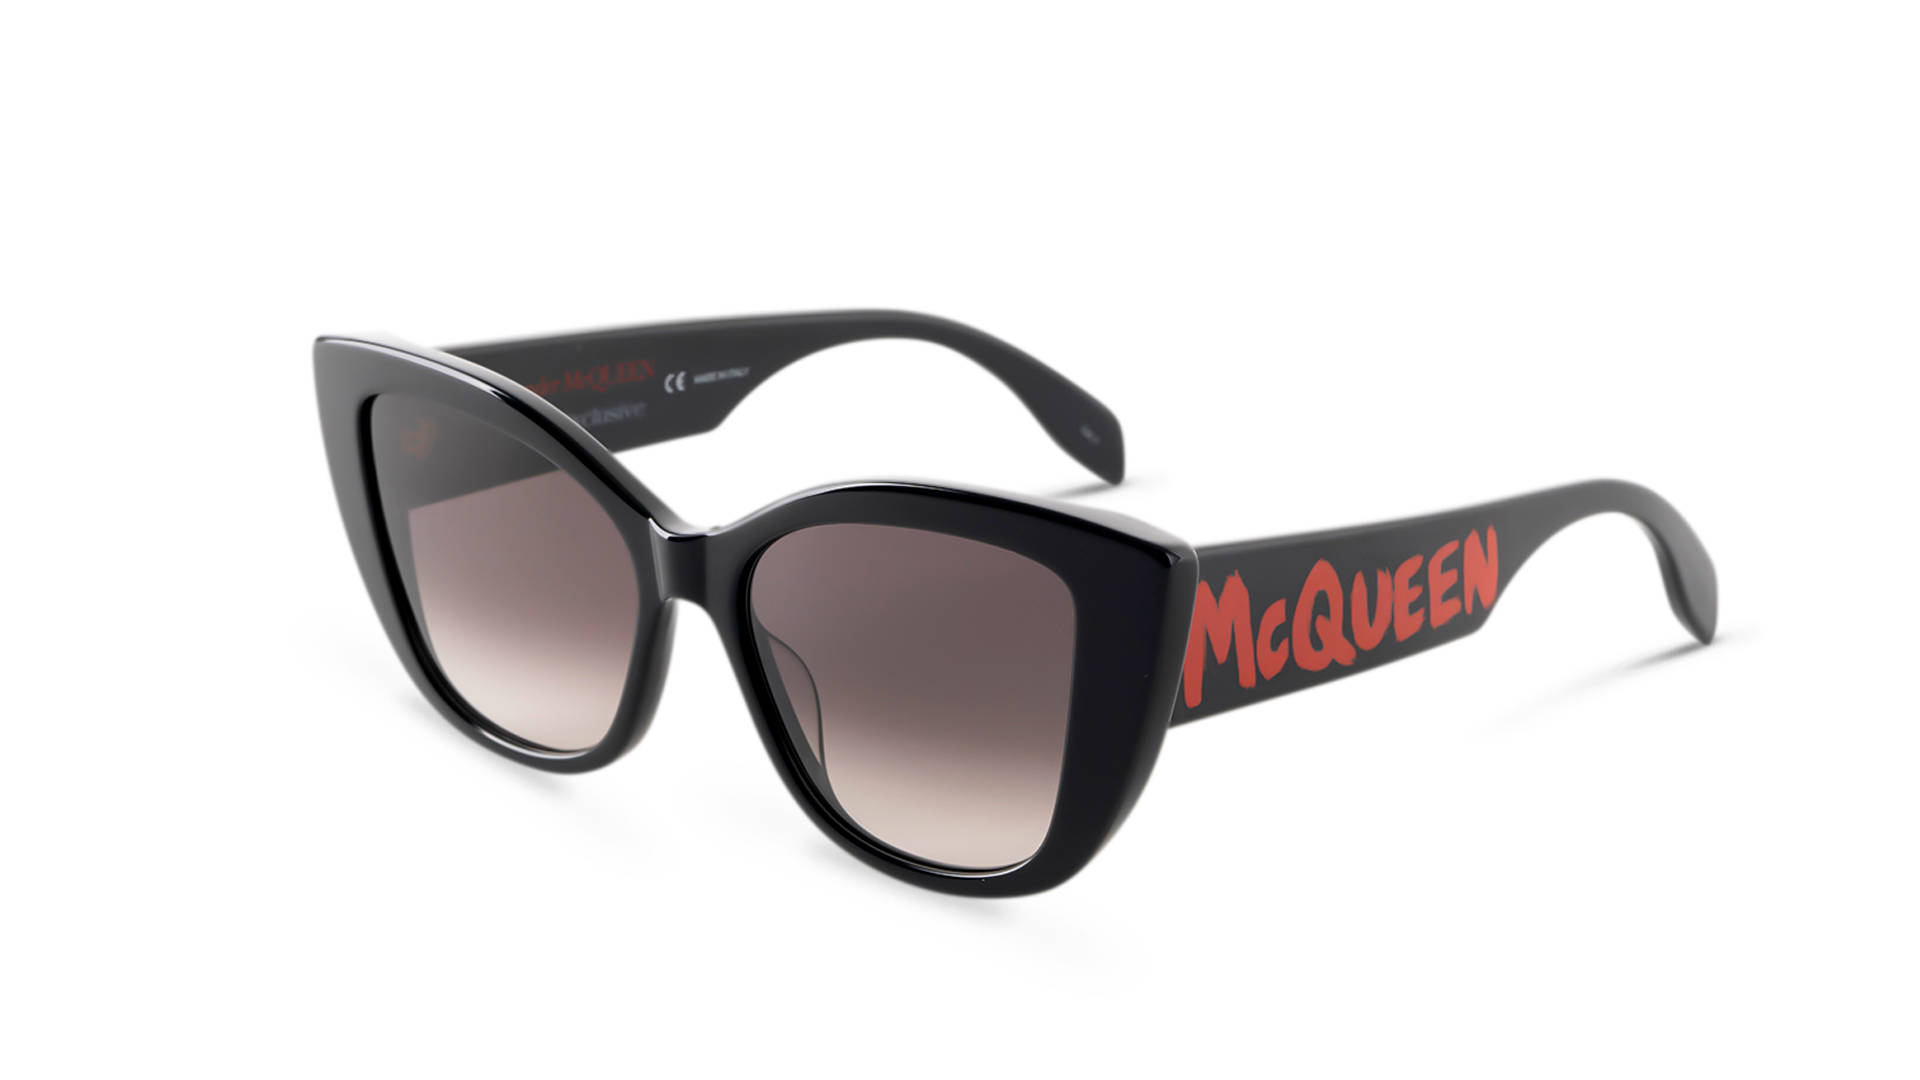 Alexander Mcqueen's Iconic Black Bold Fashion Sunglasses